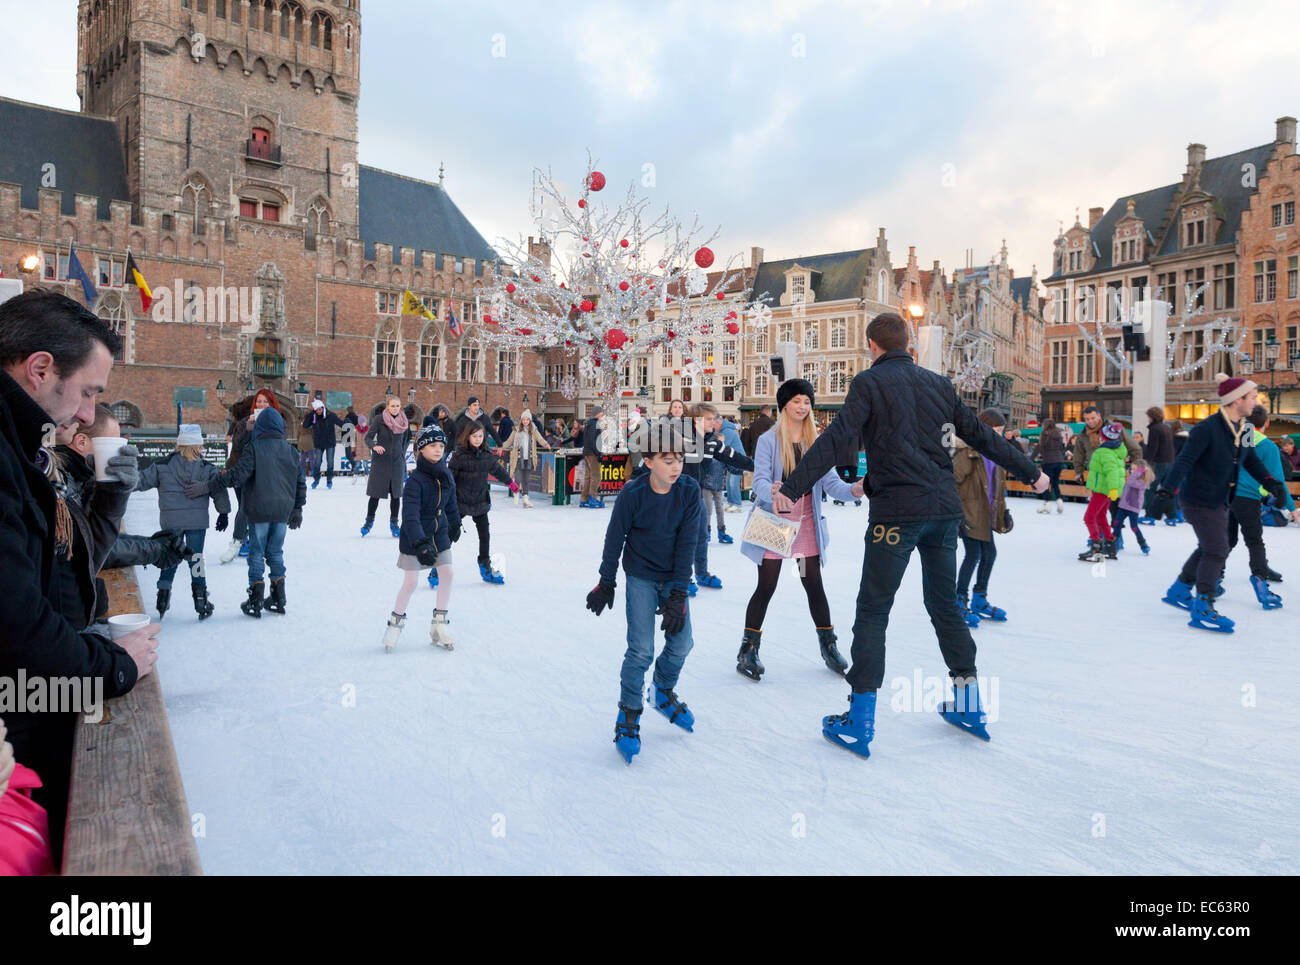 Eislaufen auf dem Marktplatz (Marktplatz) in Brügge (Brugge) Weihnachtsmarkt, Belgien, Europa der Bürger Stockfoto